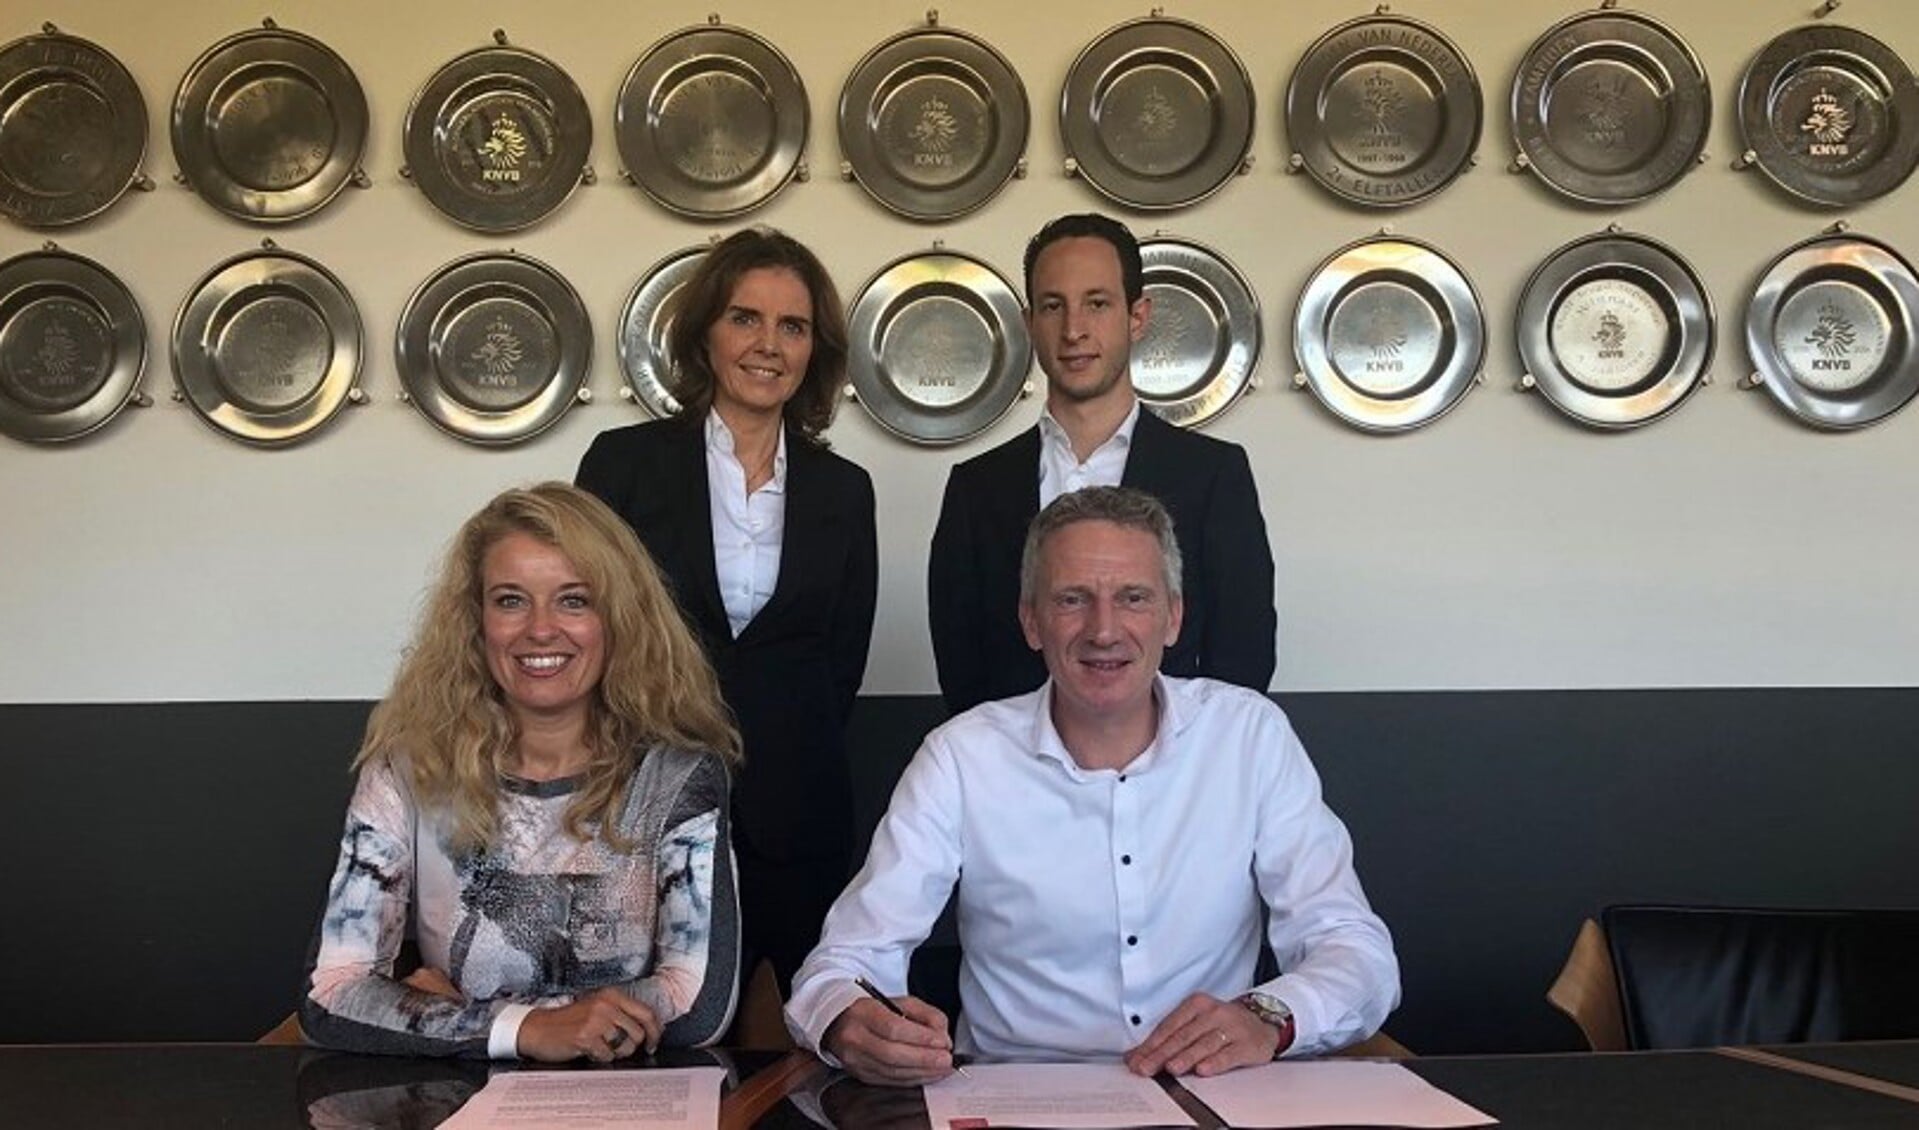 Voorzitters Jolanda Remmelzwaal en Ronald Vonk ondertekenen namens Ter Leede de samenwerkingsovereenkomst met Ajax. Marleen Molenaar, manager vrouwenvoetbal Ajax, en trainer Benno Nihom kijken toe. | Foto: pr.